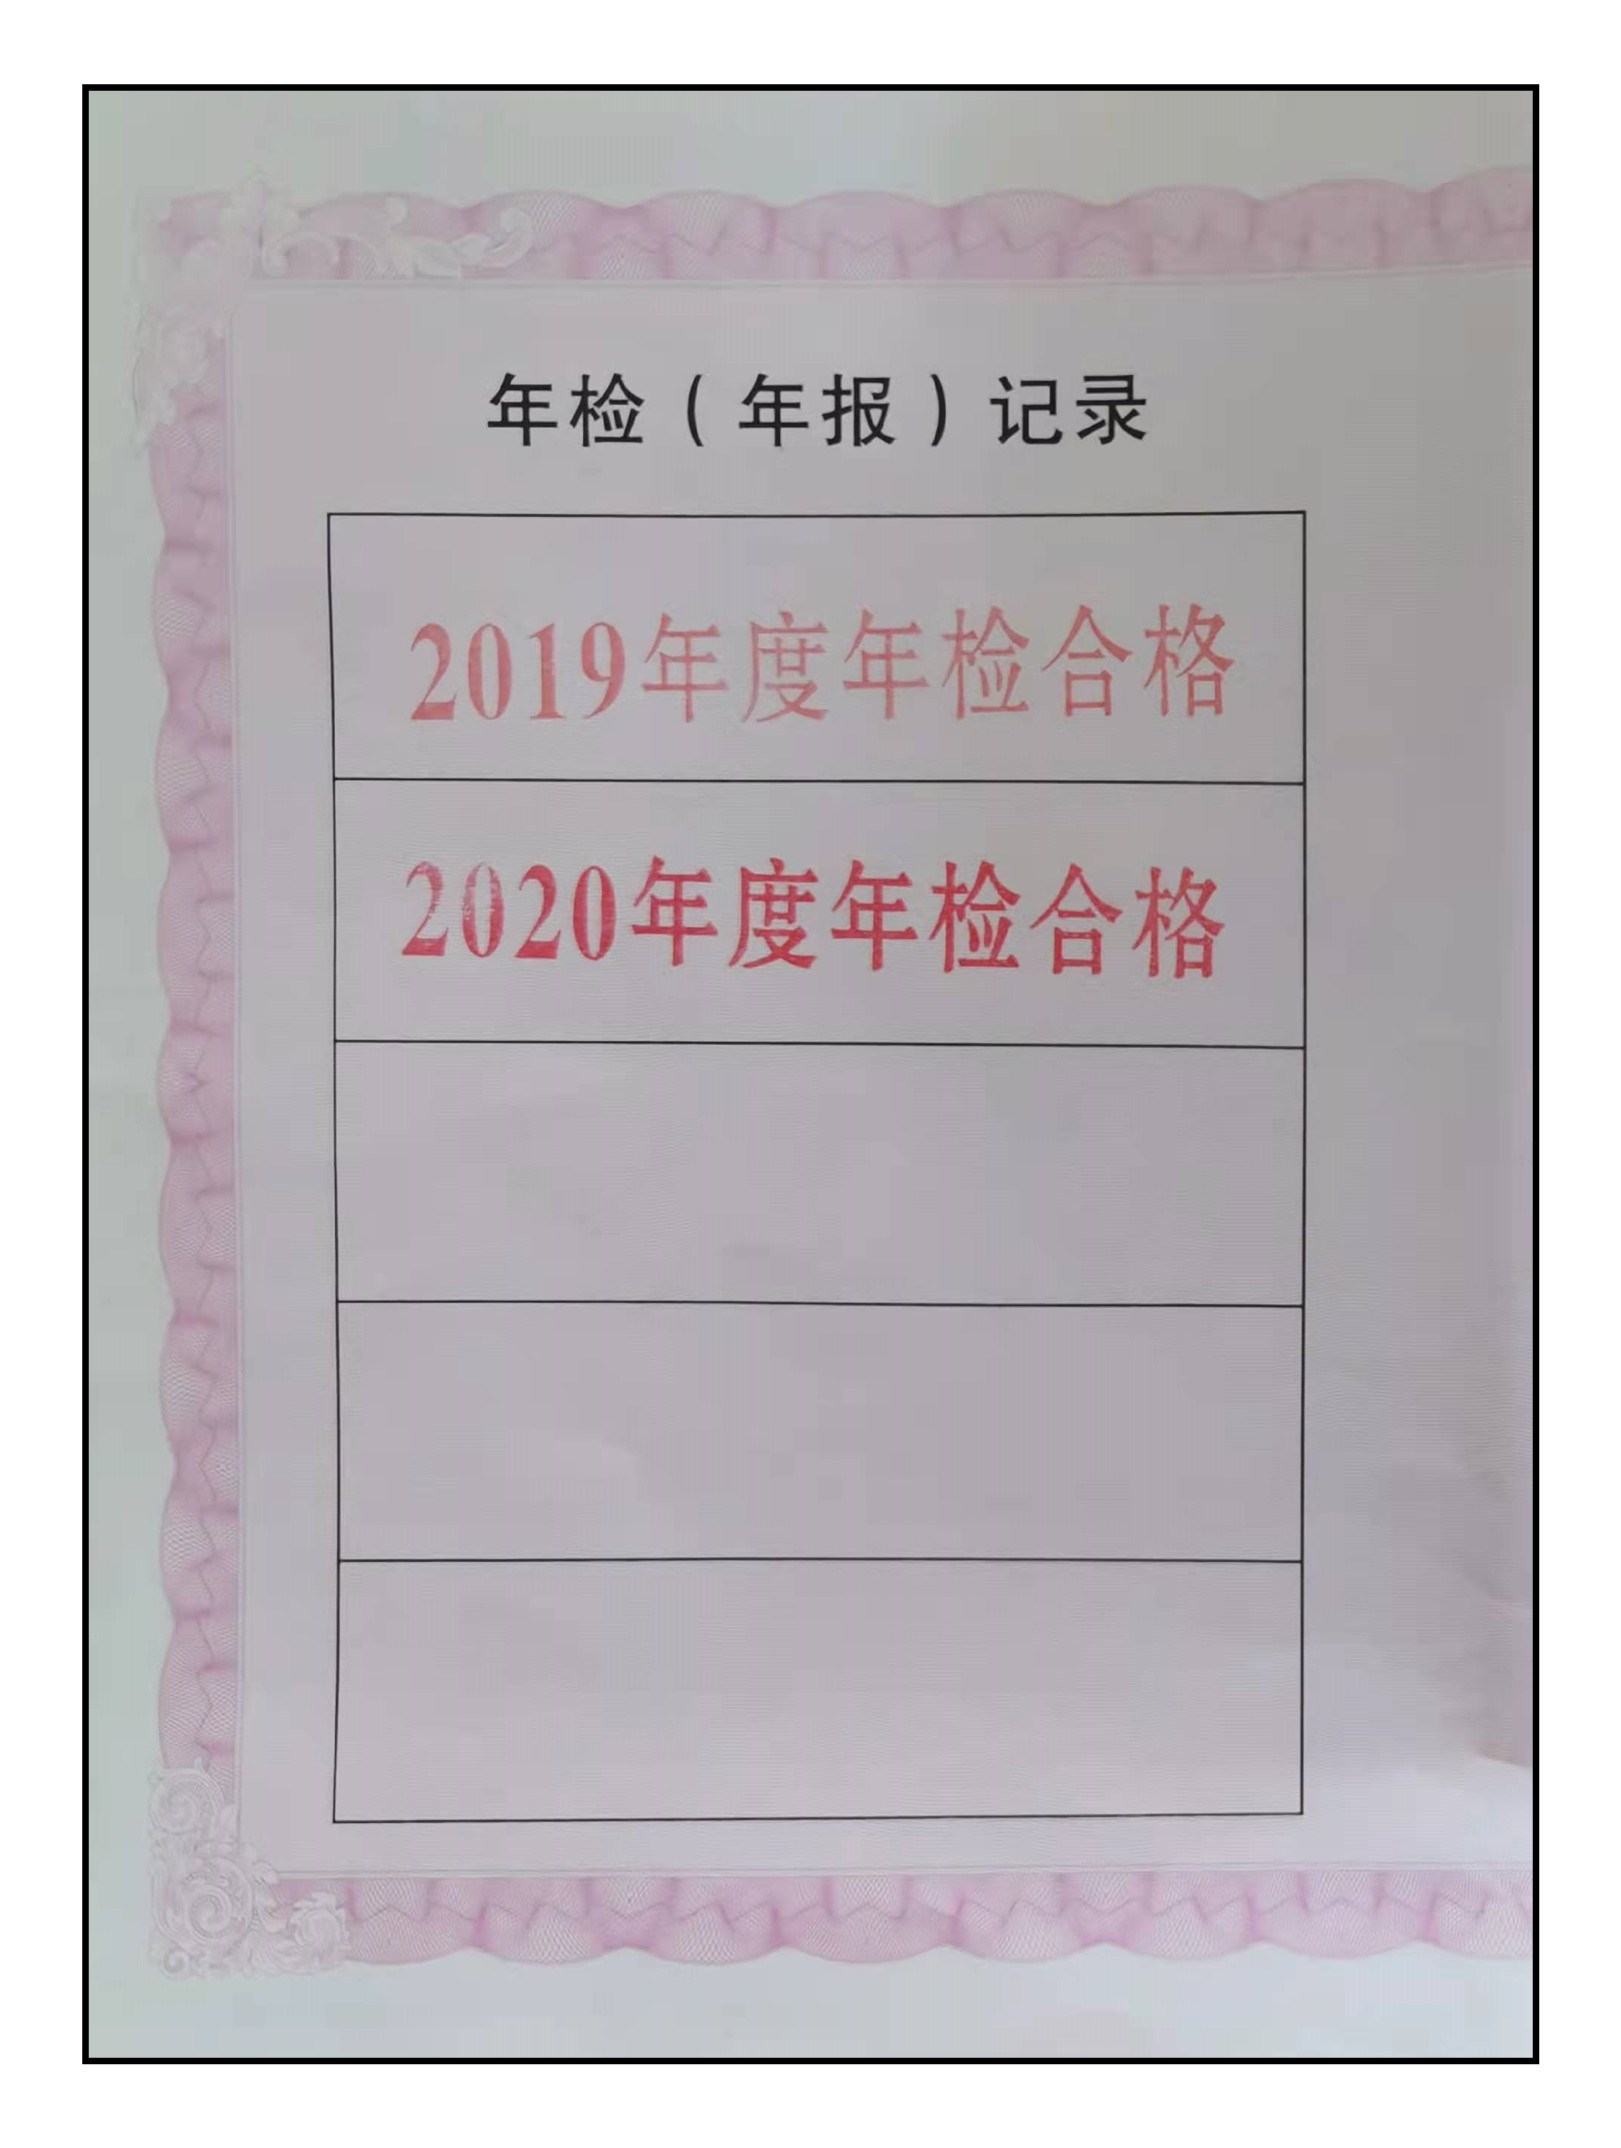 喜讯| 中国医药新闻信息协会顺利通过2020年度全国性社会团体年检